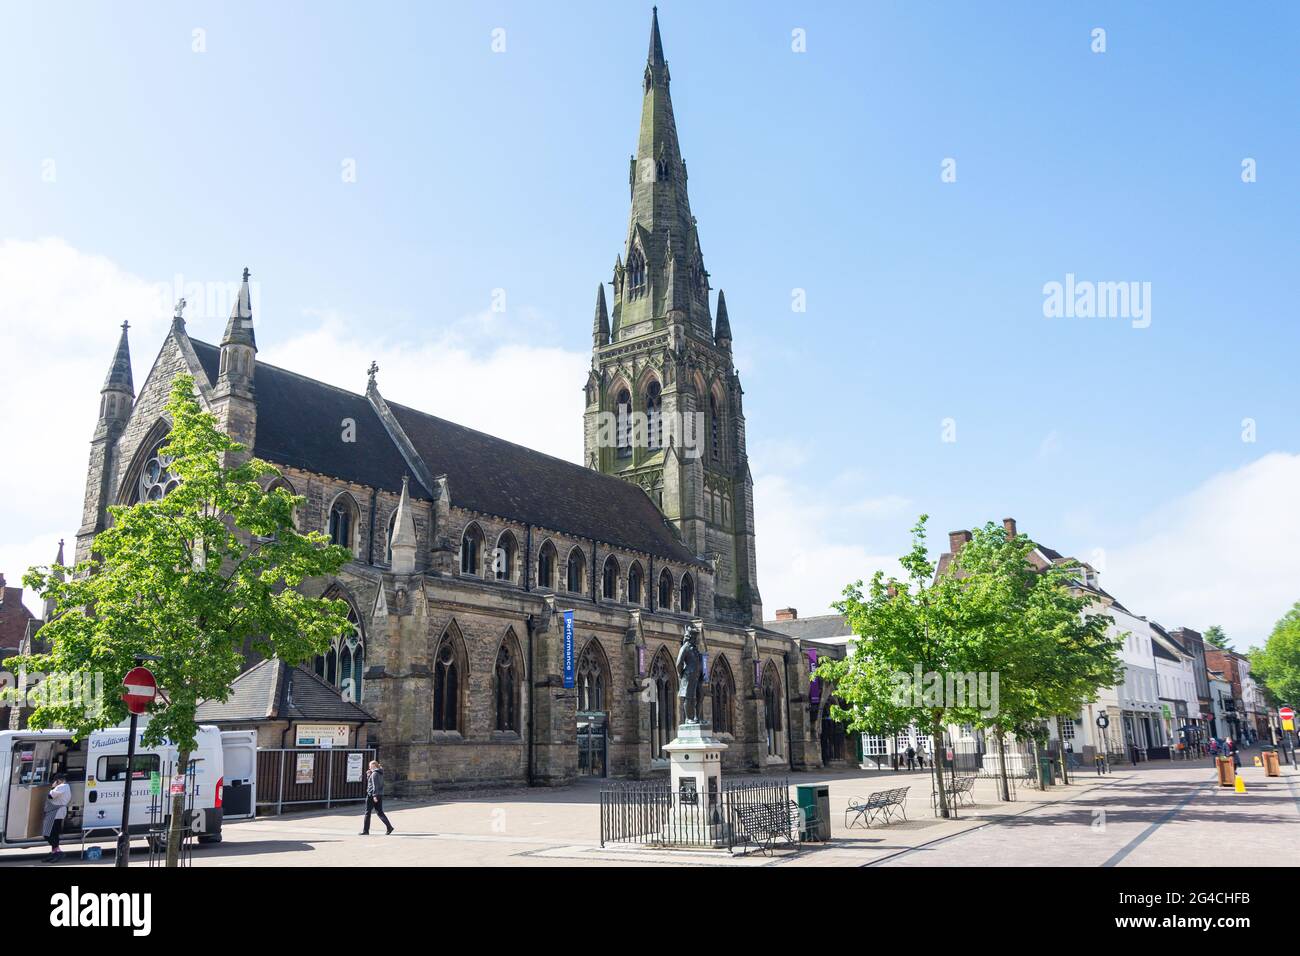 Eglise du patrimoine St Mary (le centre d'art de St Mary), Market Street, Lichfield, Staffordshire, Angleterre, Royaume-Uni Banque D'Images